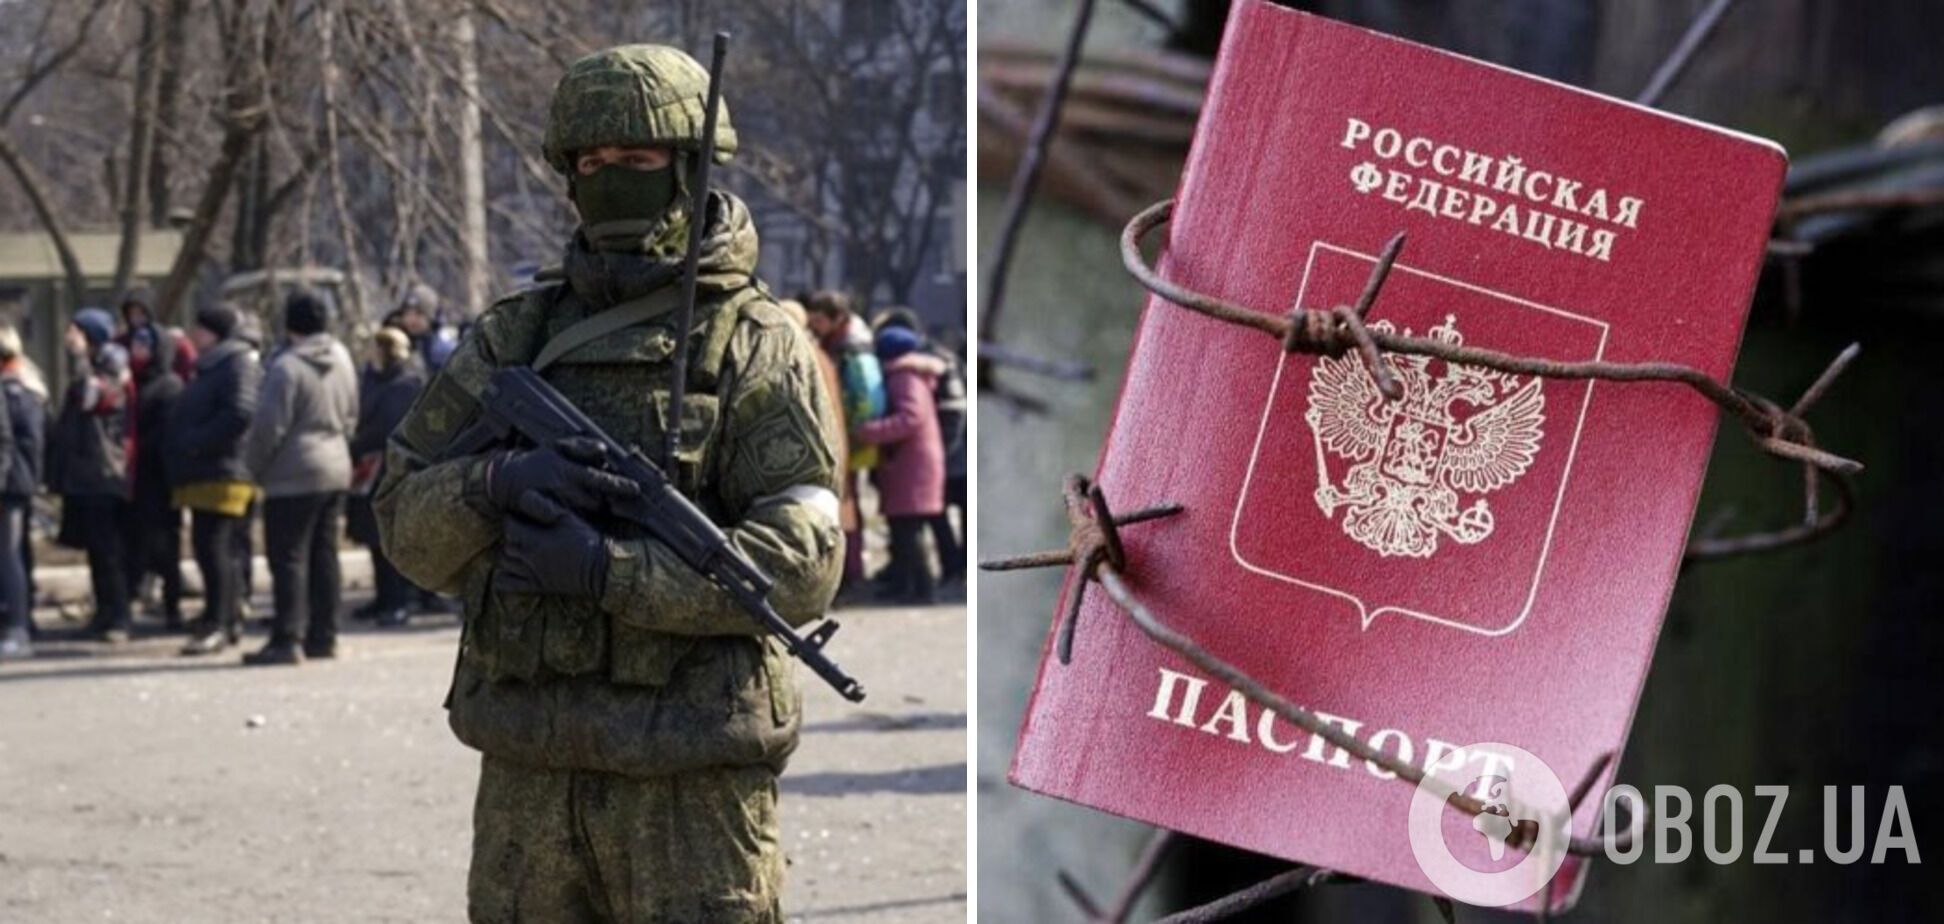 Окупанти вигадали ще один спосіб примусової паспортизації українців – ЦНС